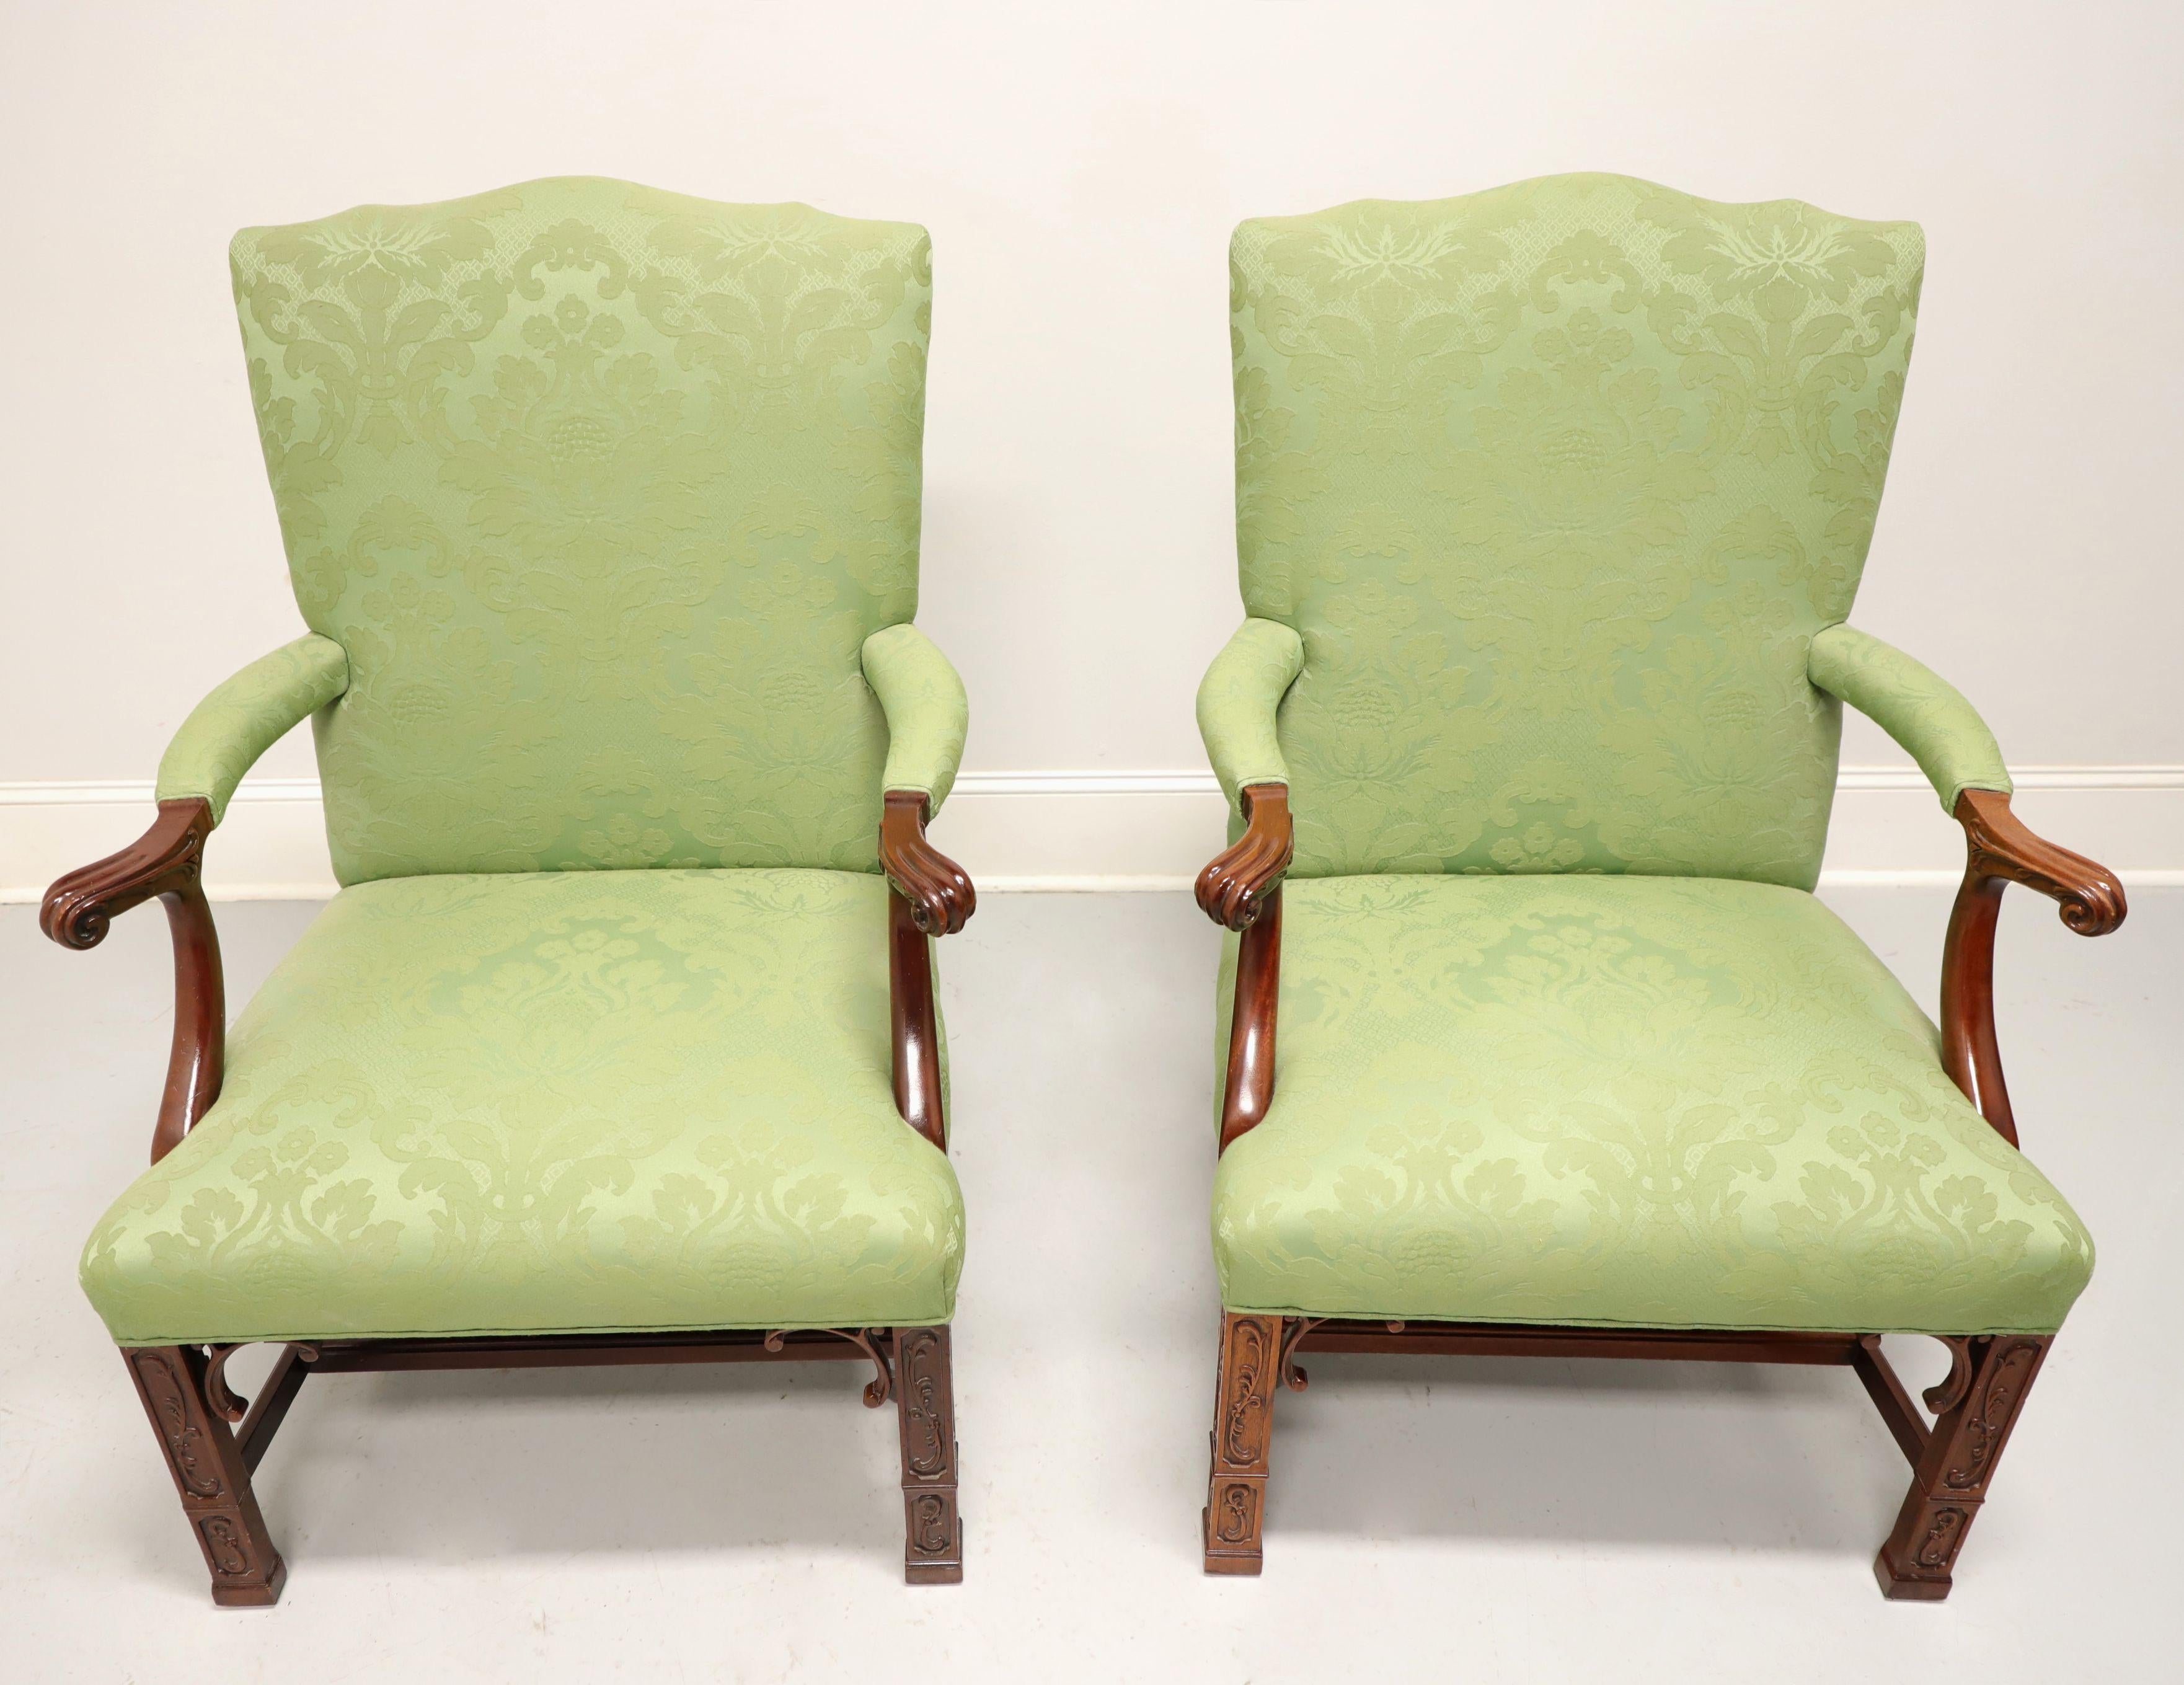 Paire de fauteuils rembourrés de style Chippendale par Southwood, Gainsborough. Structure en acajou, garniture en tissu de brocart vert clair, accoudoirs en volute rembourrés, pieds droits décoratifs sculptés de frettes, base à entretoise et pieds